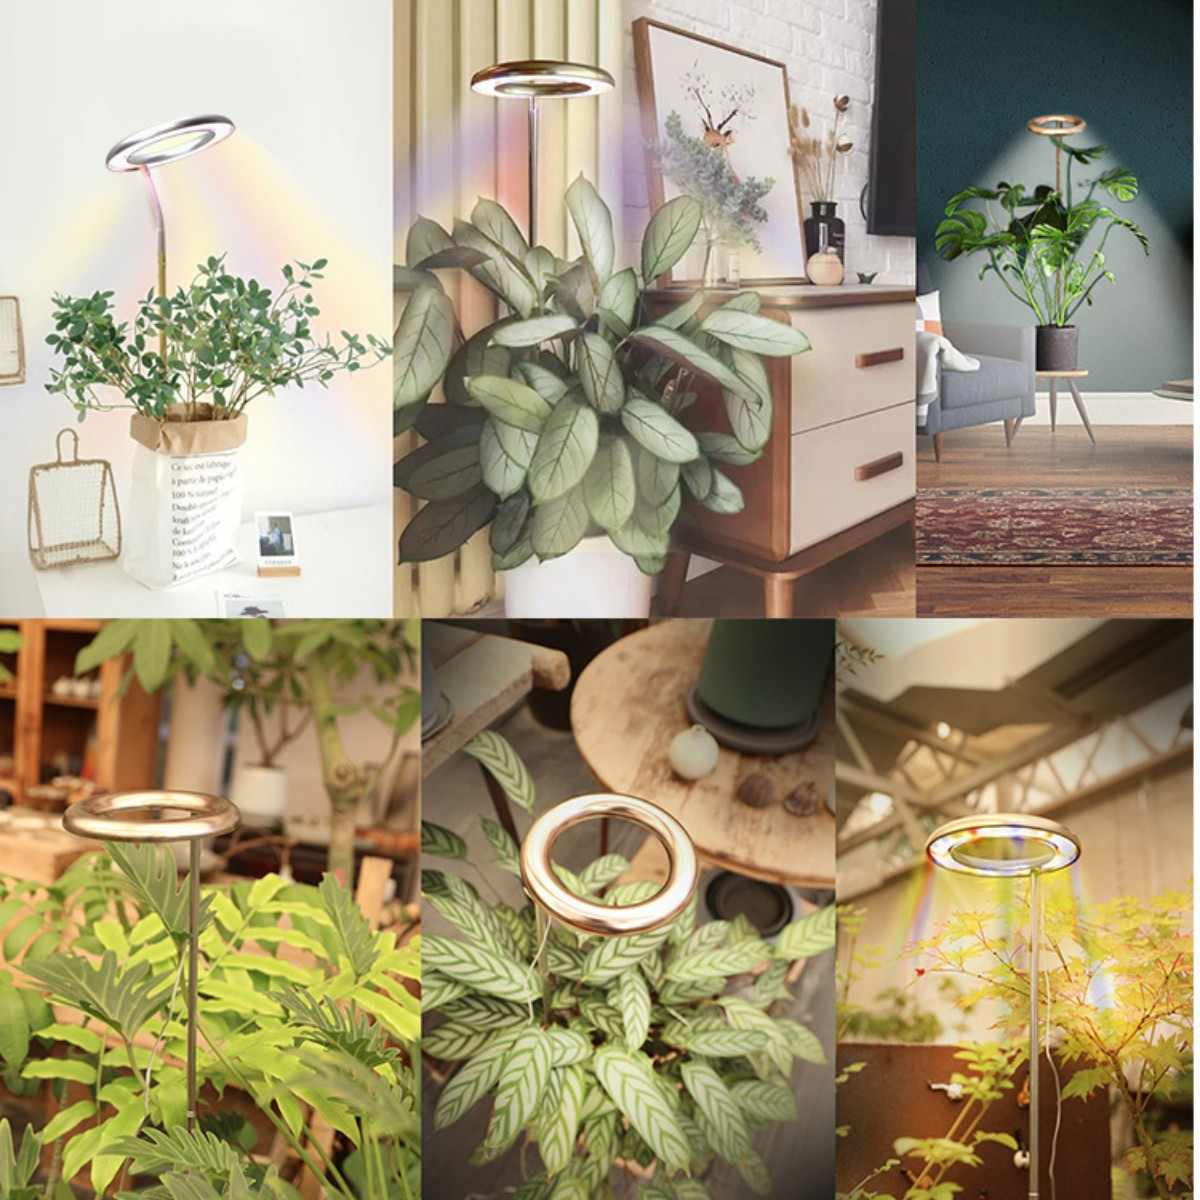 SYNTEK Pflanze wachsen Licht 1,5 Vollspektrum-LED Pflanzenleuchte, füllen Silber, großen Licht Pflanze hoch Weiß Halo m